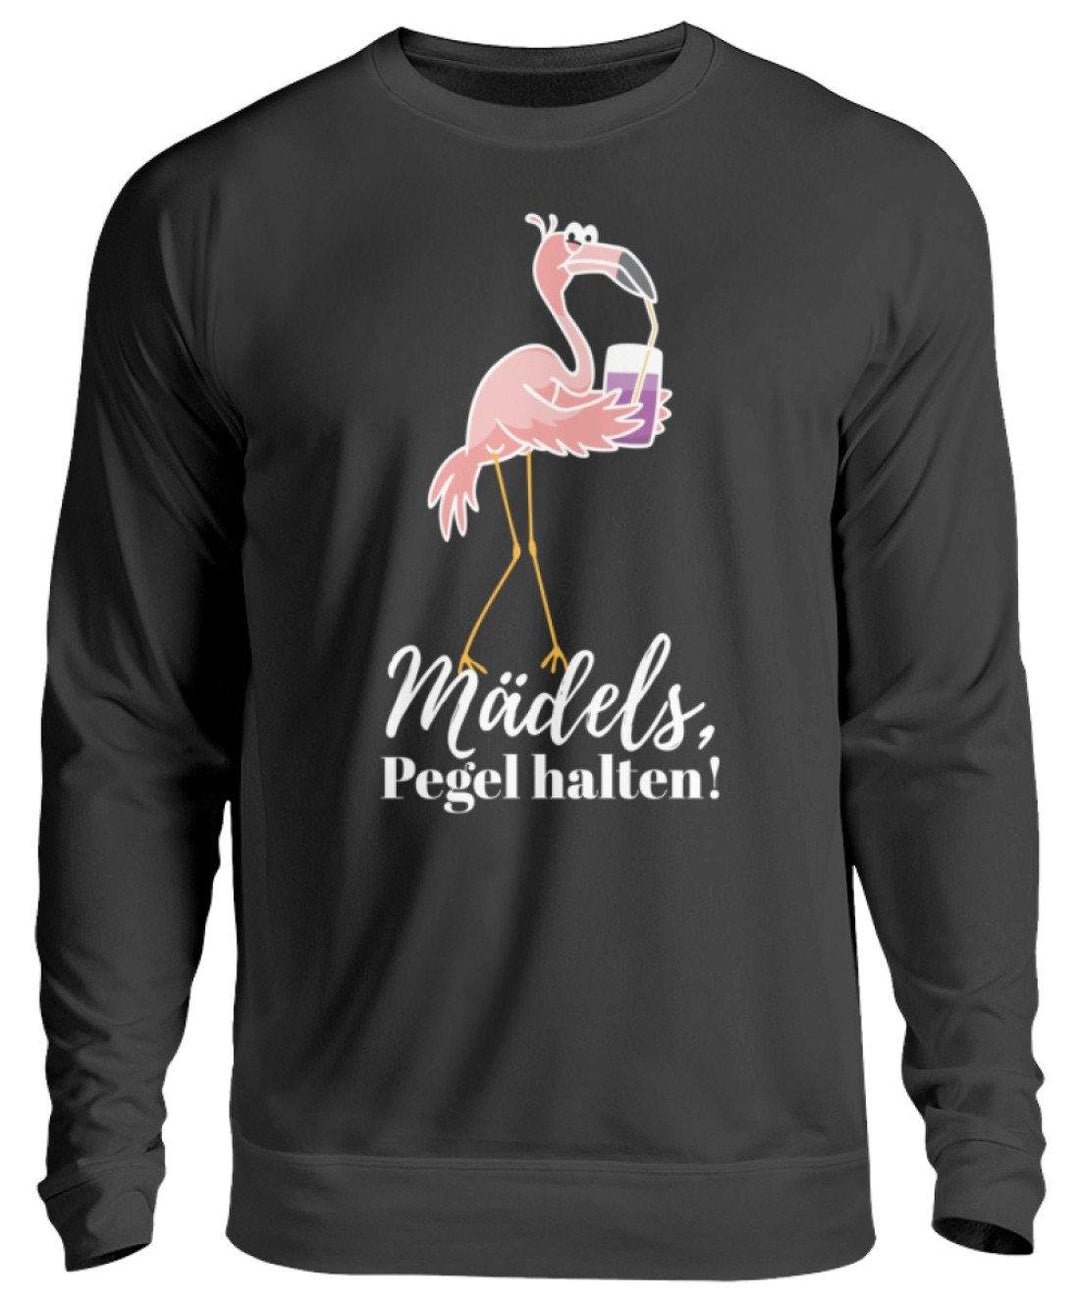 Mädels Pegel halten - Flamingo  - Unisex Pullover - Words on Shirts Sag es mit dem Mittelfinger Shirts Hoodies Sweatshirt Taschen Gymsack Spruch Sprüche Statement